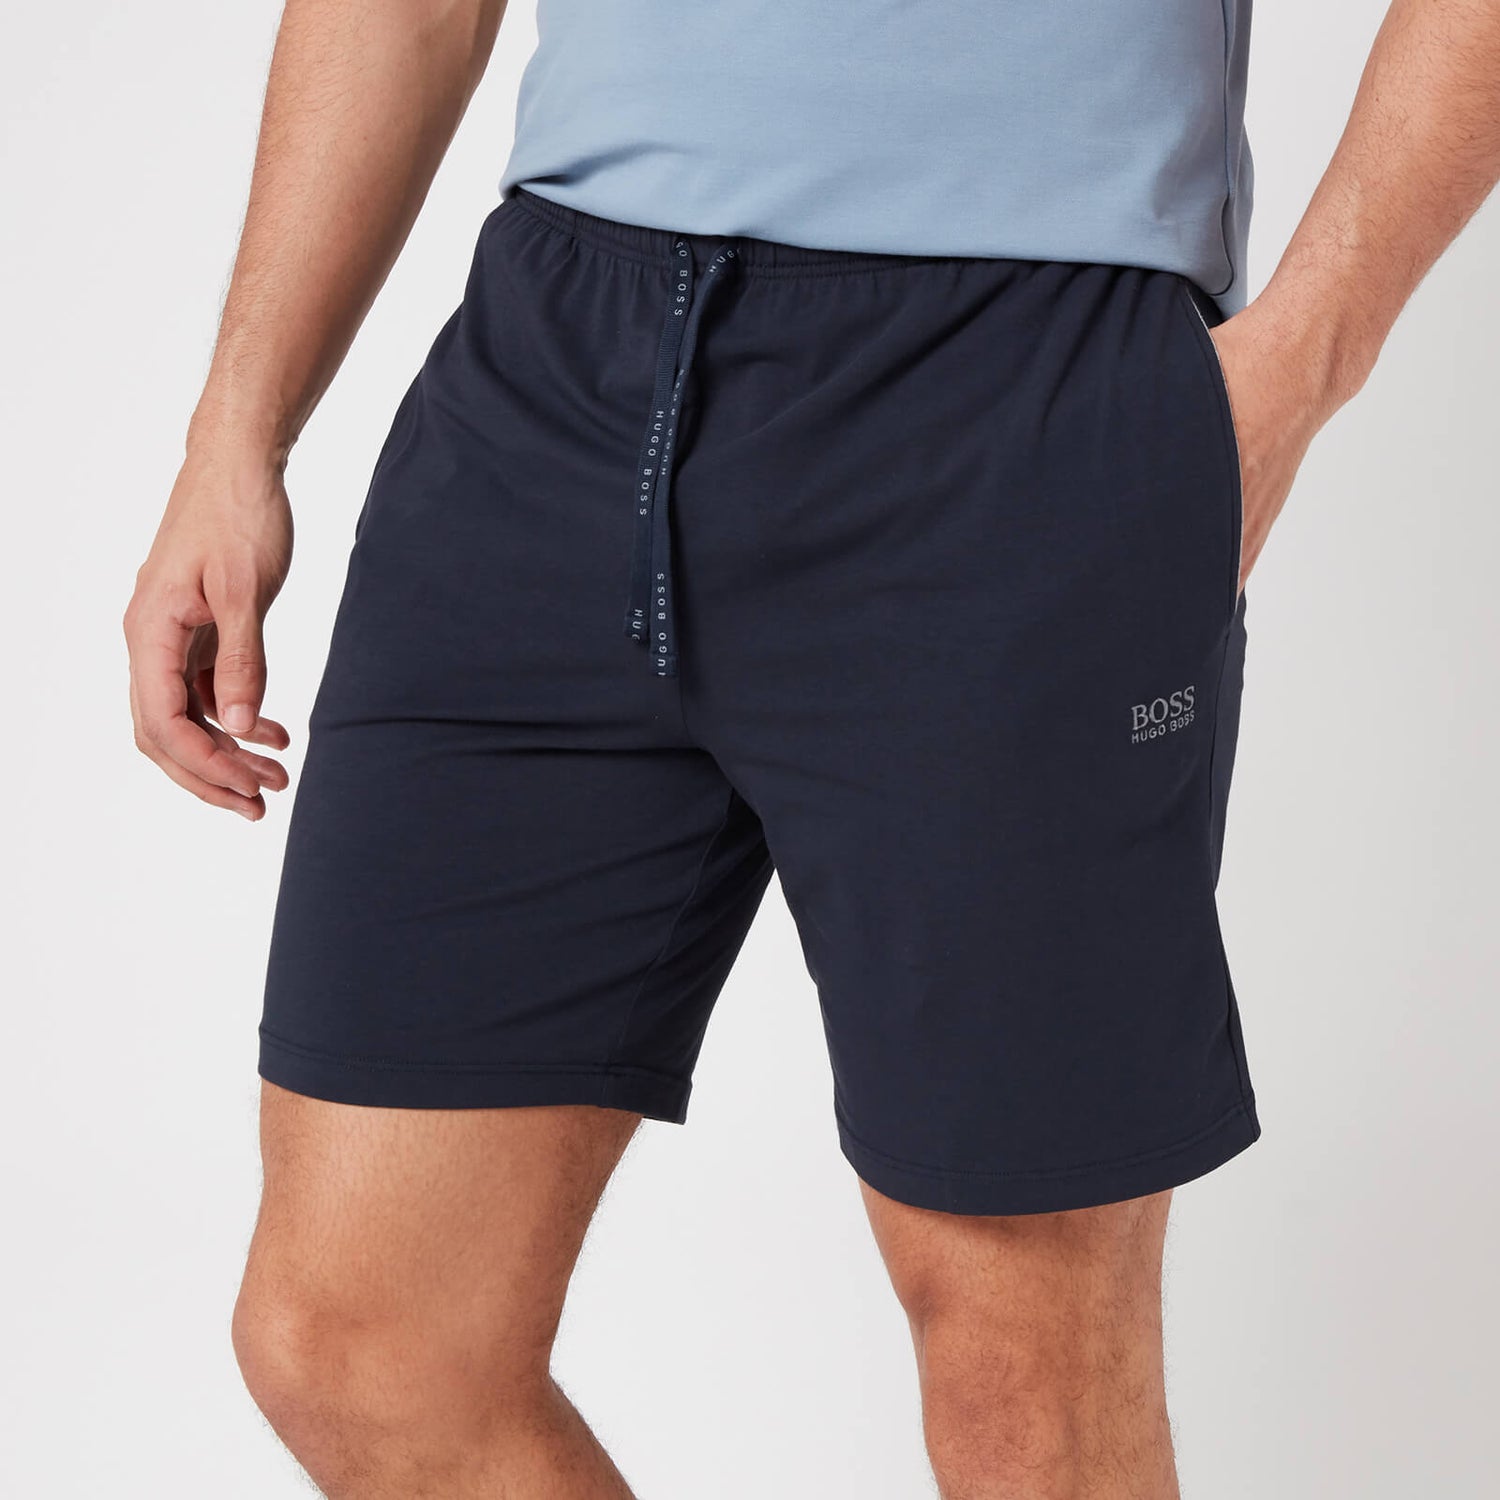 BOSS Loungewear Men's Mix&Match Shorts with Contrast Waistband - Dark Blue